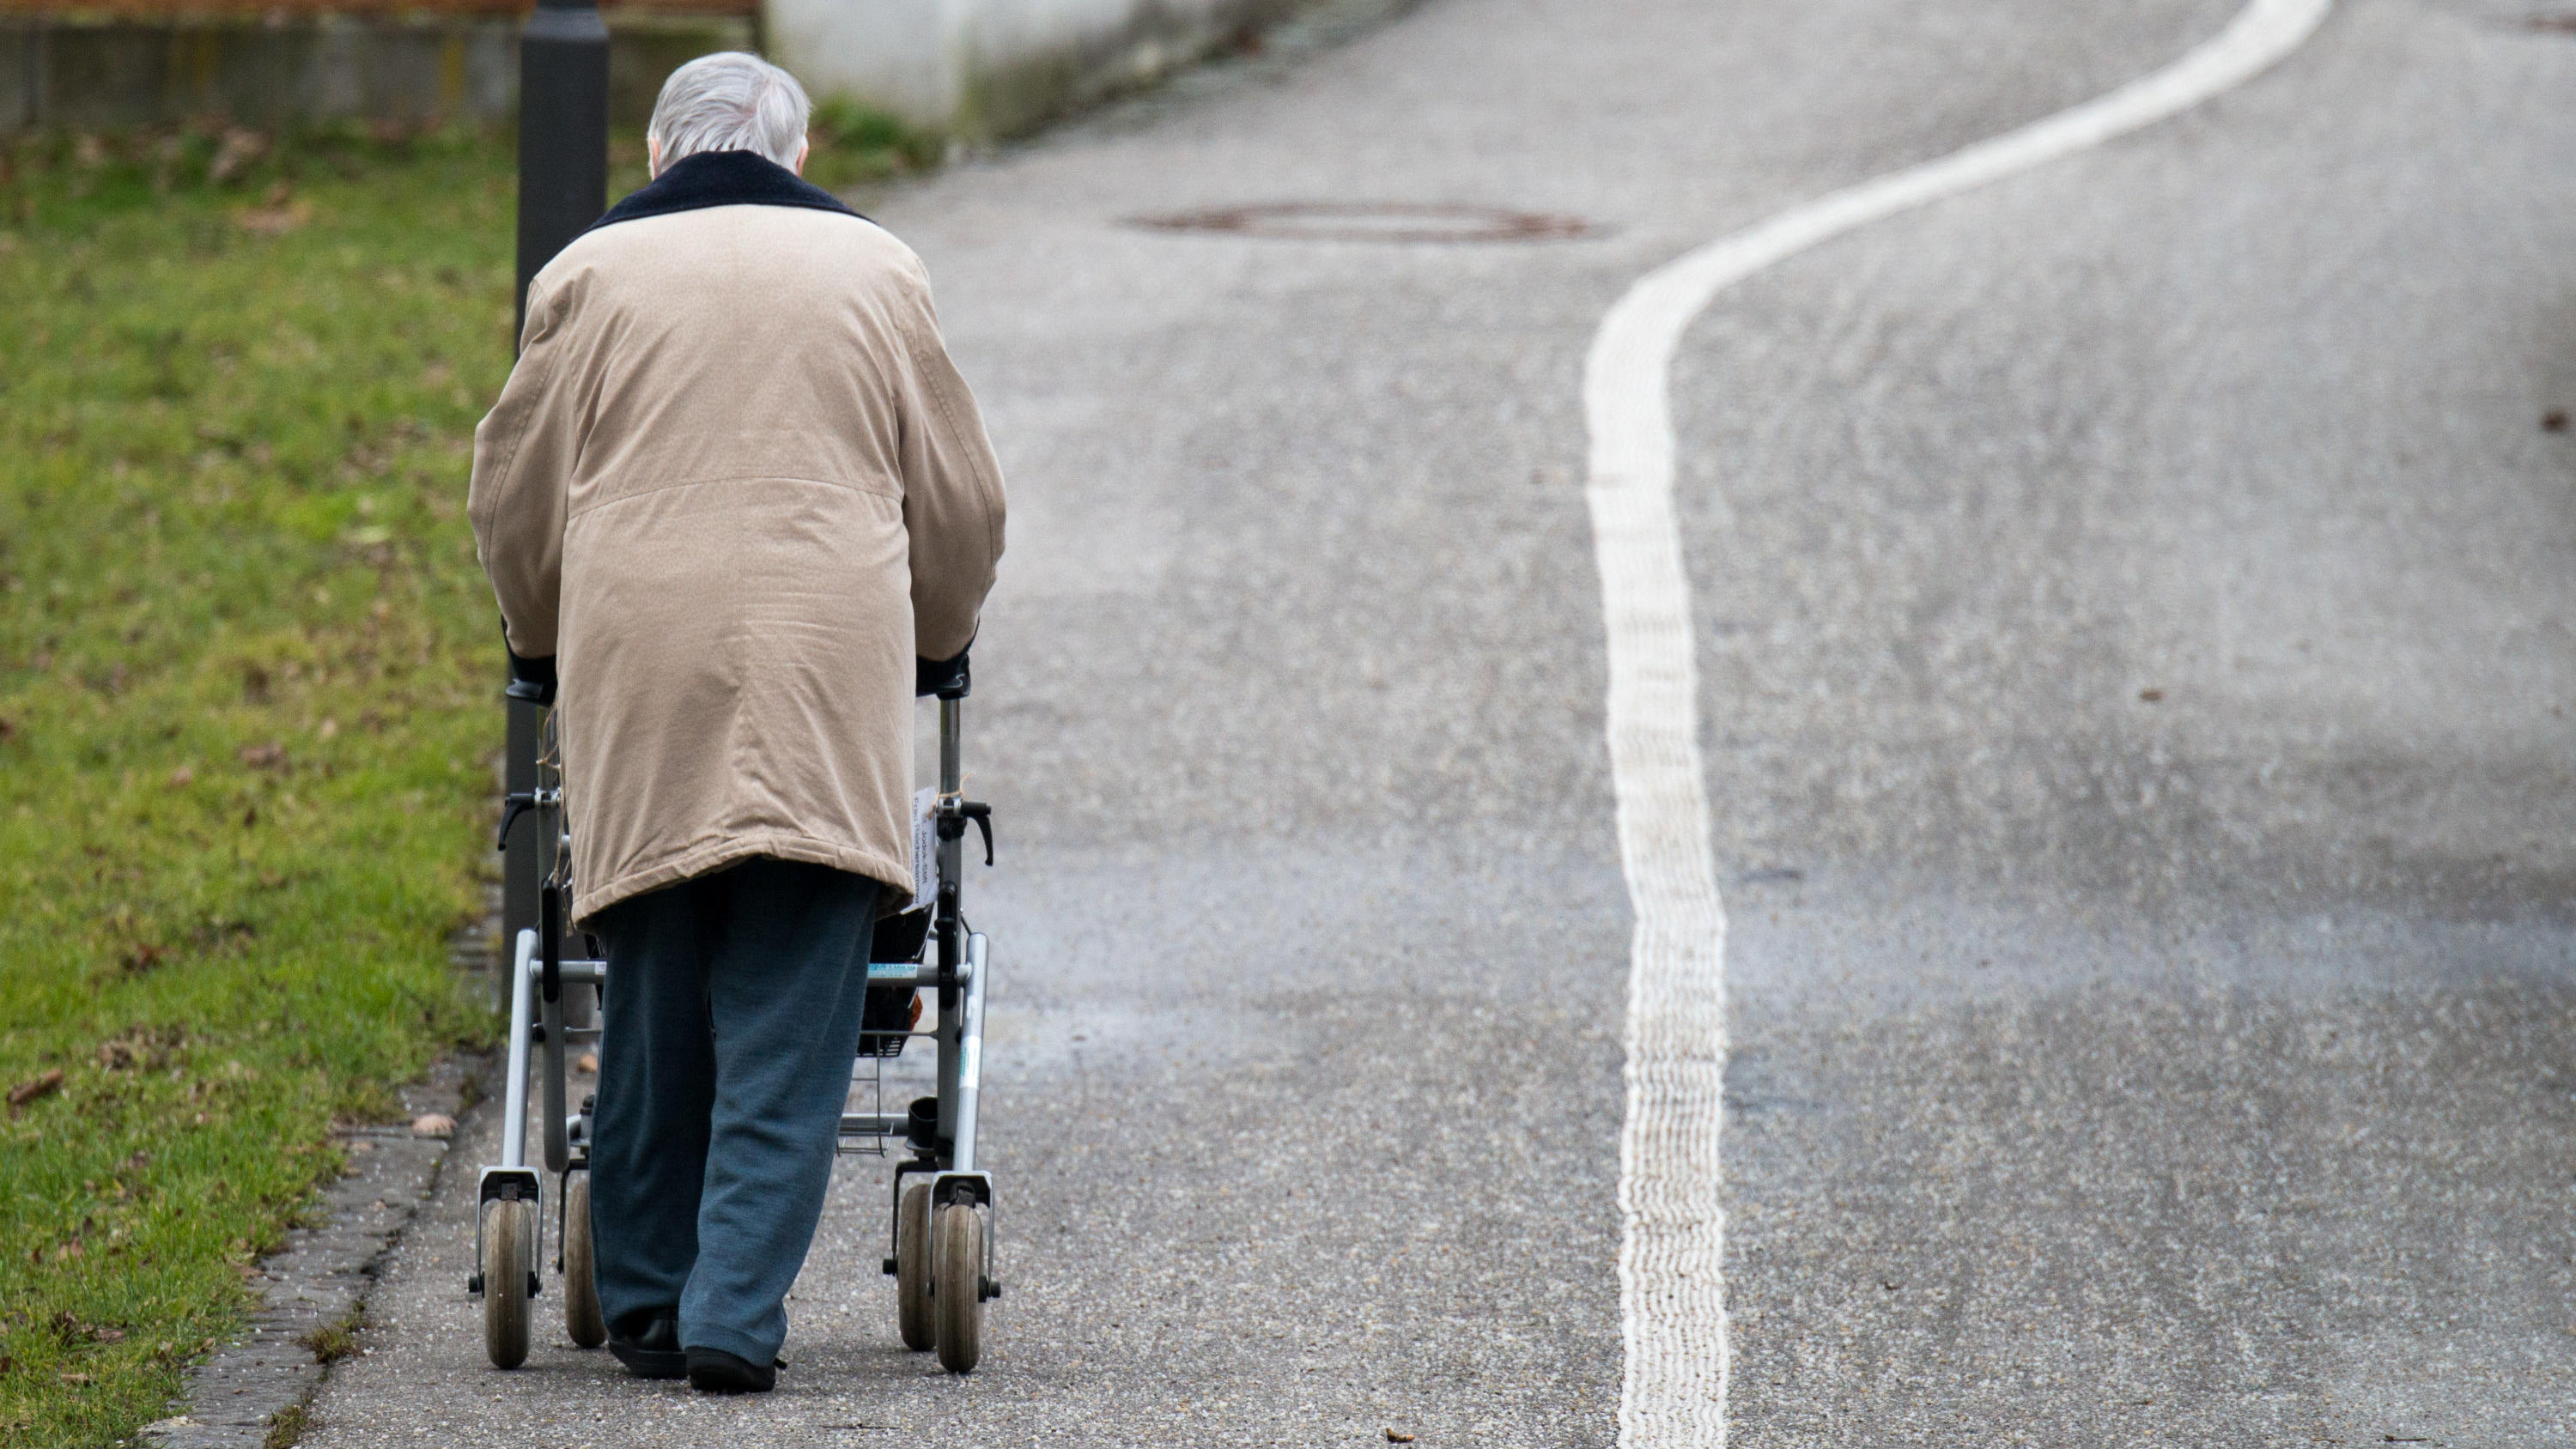 ARCHIV - 16.01.2014, Bayern, Landshut: Eine ältere Frau geht mit einem Rollator auf einem Weg entlang. Foto: Armin Weigel/dpa +++ dpa-Bildfunk +++